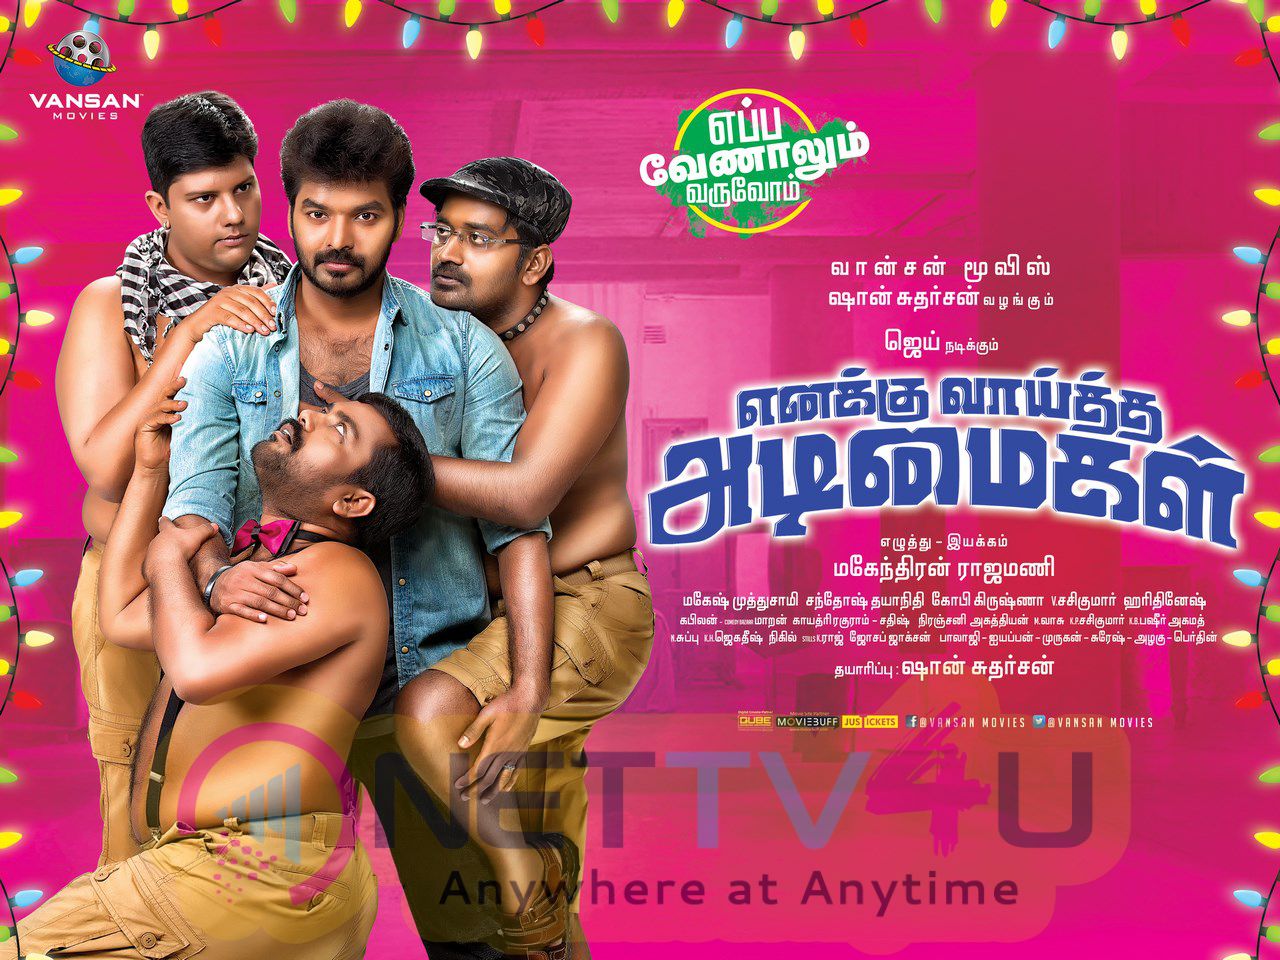 Enakku Vaitha Adimaigal Tamil Movie Good Looking Posters Tamil Gallery